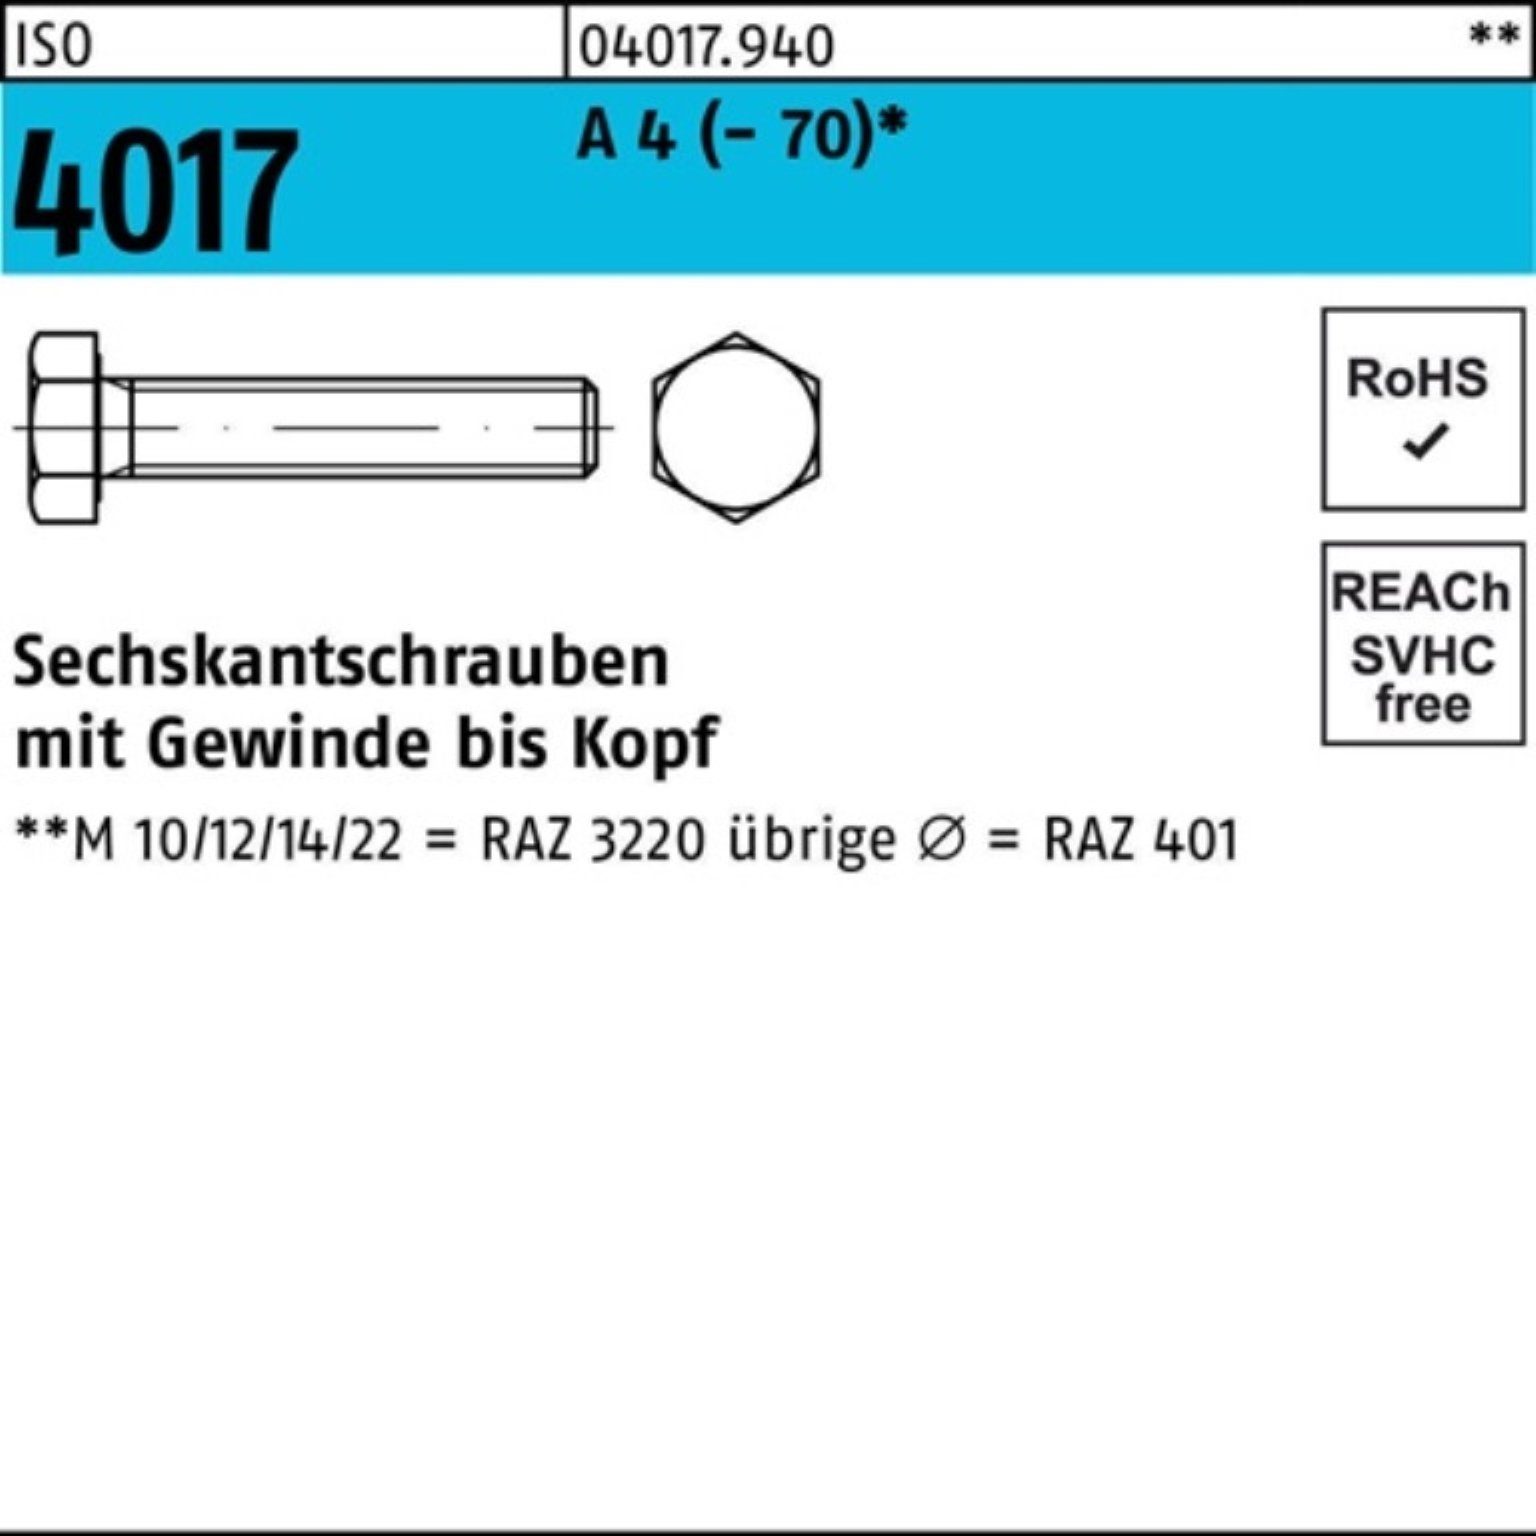 Bufab Sechskantschraube 100er Pack Sechskantschraube ISO 4017 VG M10x 60 A 4 (70) 100 Stück | Schrauben